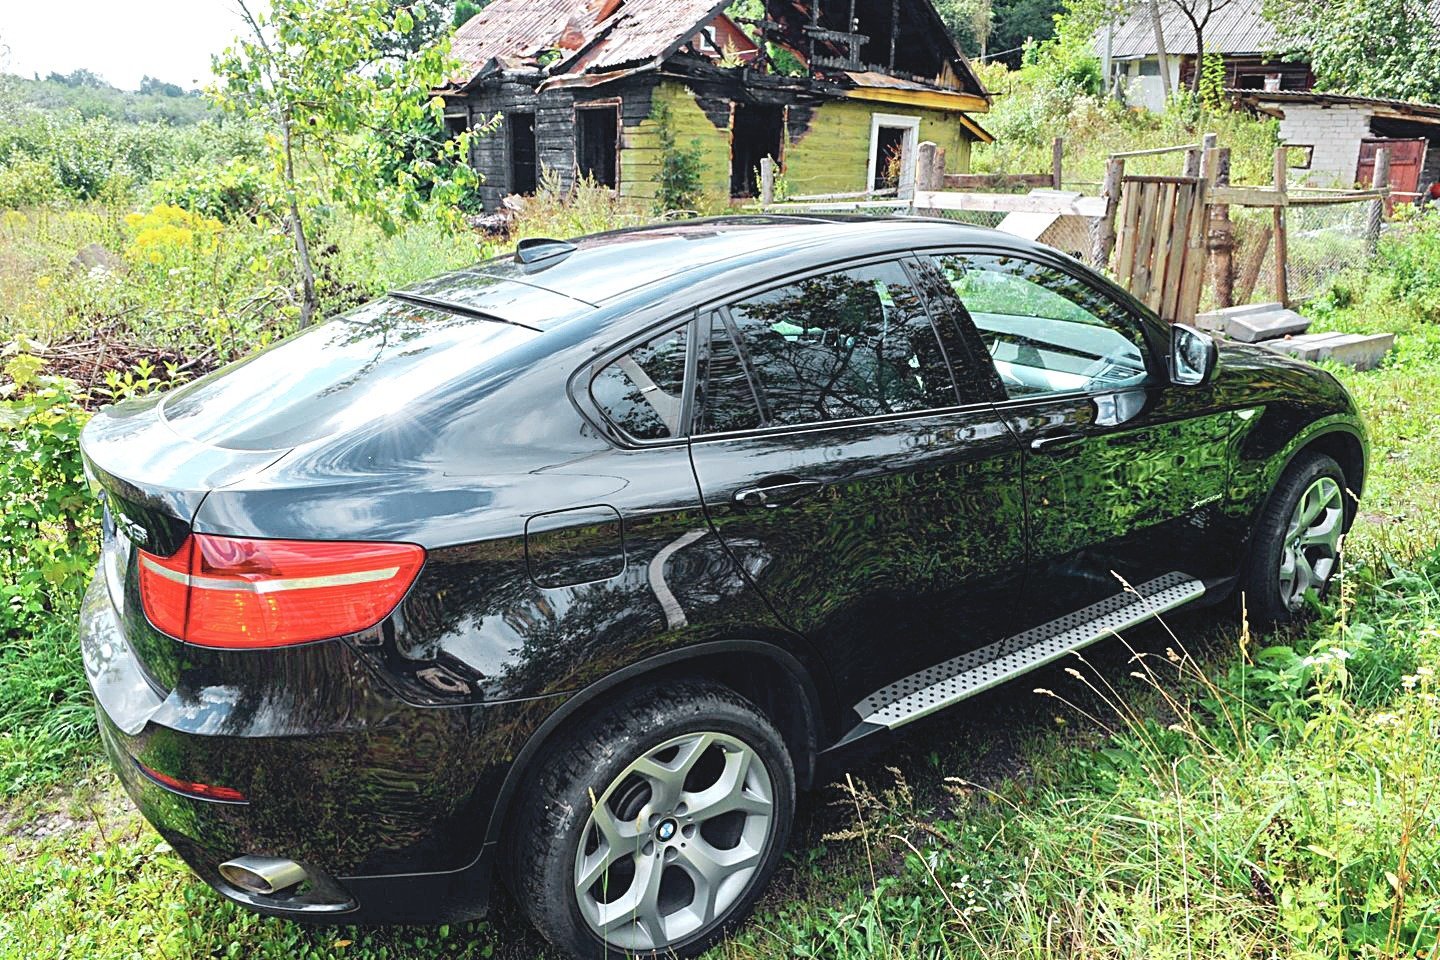 Nors teismai pripažino, kad prokurorė E.Grigaitytė neteisėtai pradangino automobilį BMW X6, atlyginti žalos jai nereikės.